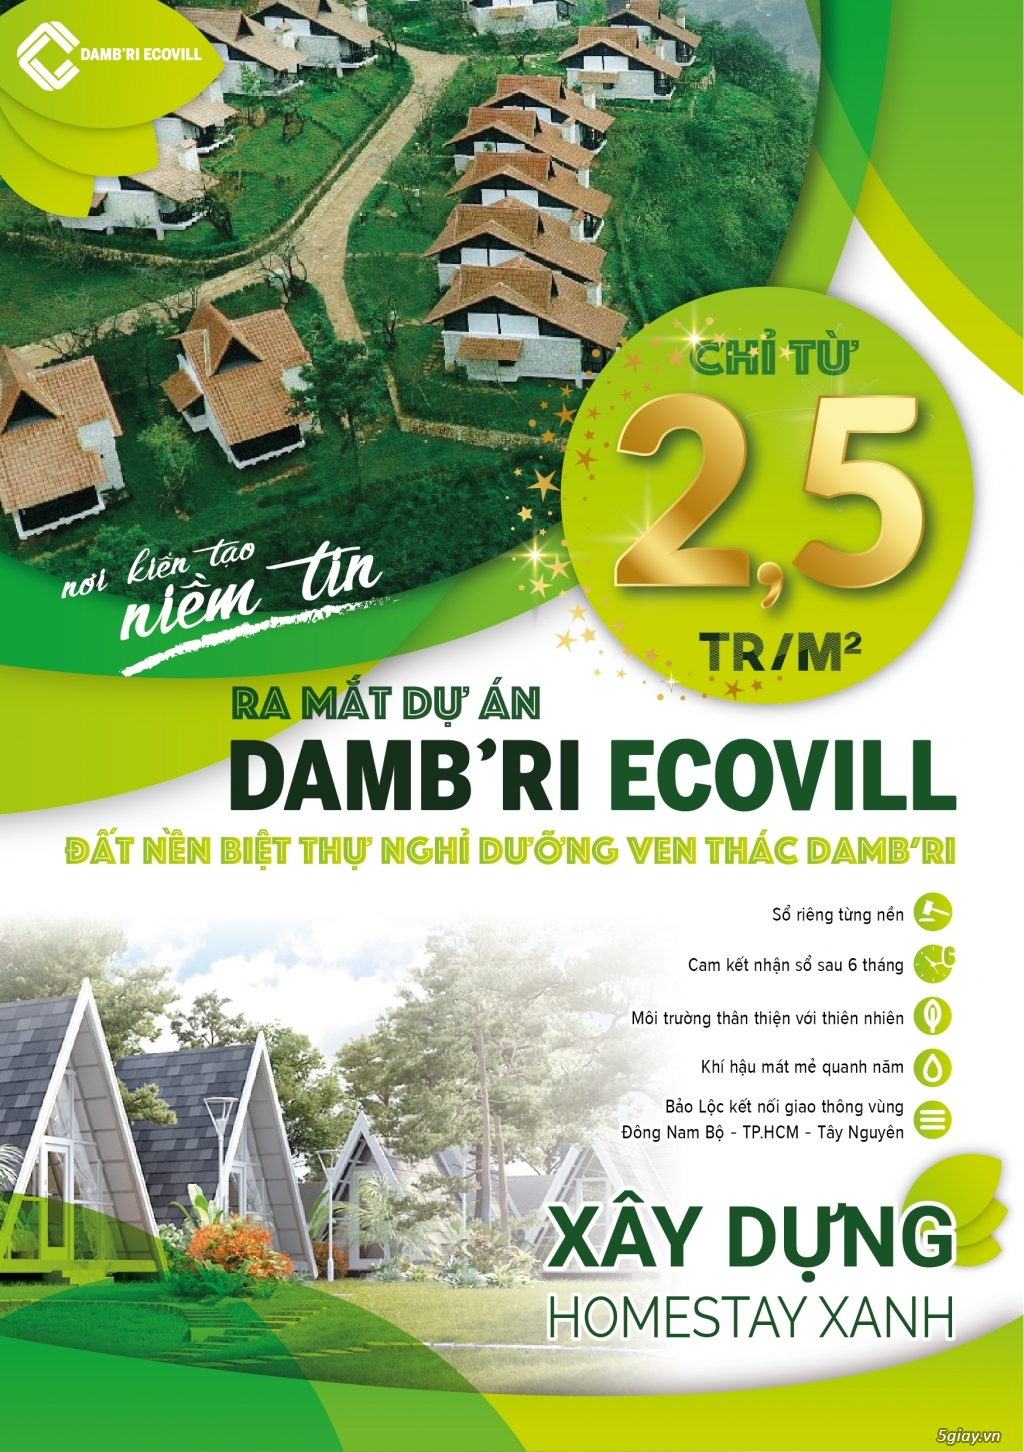 Mở Bán DamBri Ecovill, Siêu Phẩm Đất Nền Biệt Thự Đơn Lập Tại Bảo Lộc